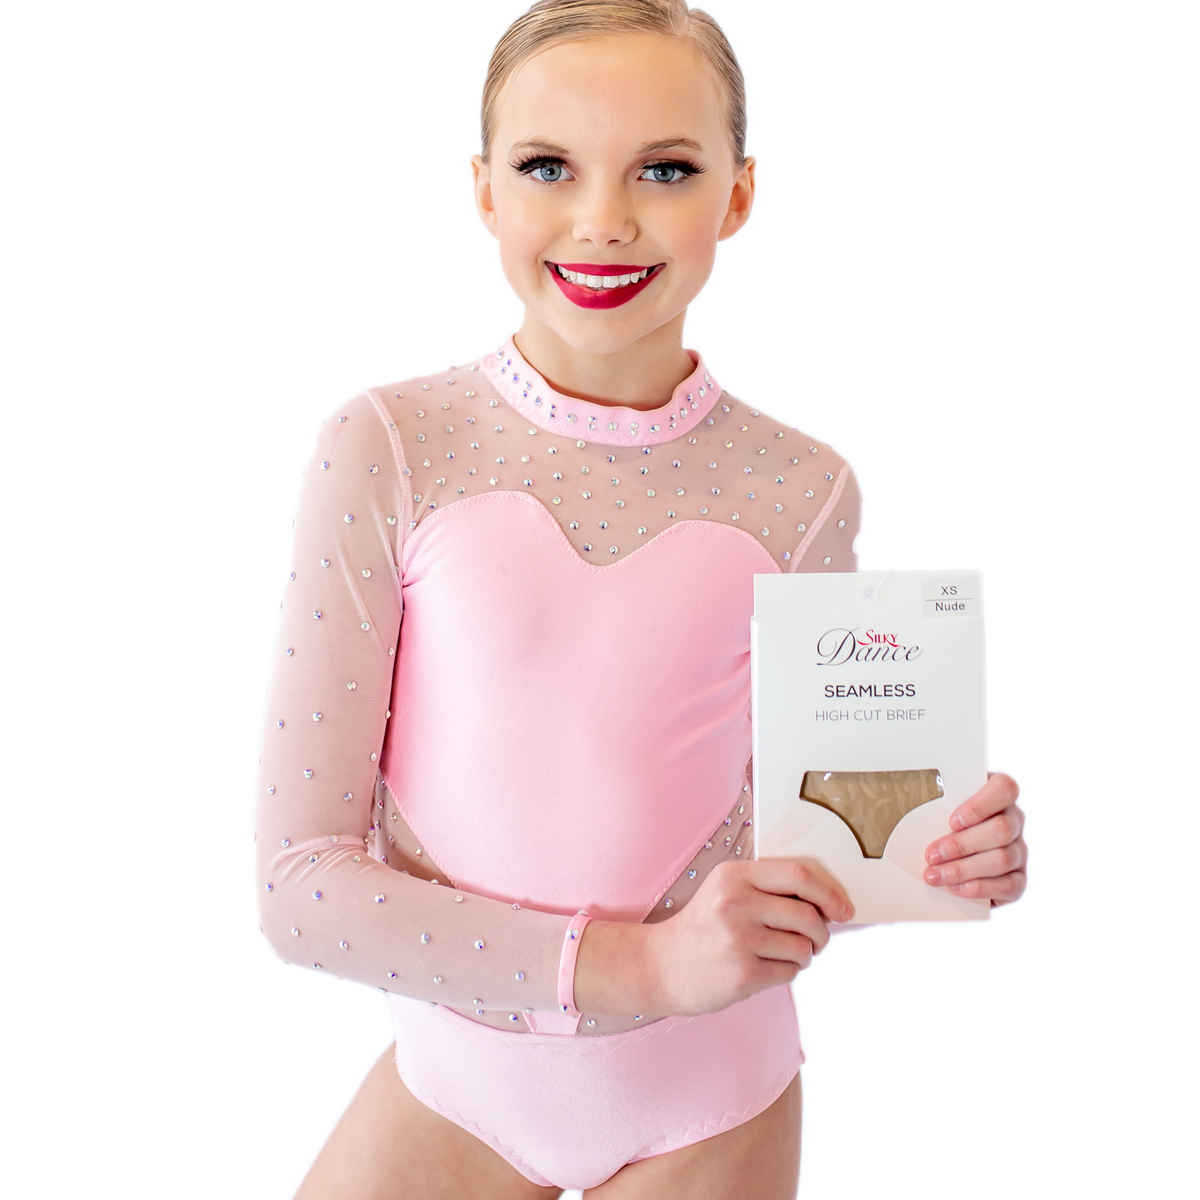 Girls Ballet Dance Seamless Knickers High Cut Cotton Briefs Gymnastics  Underwear